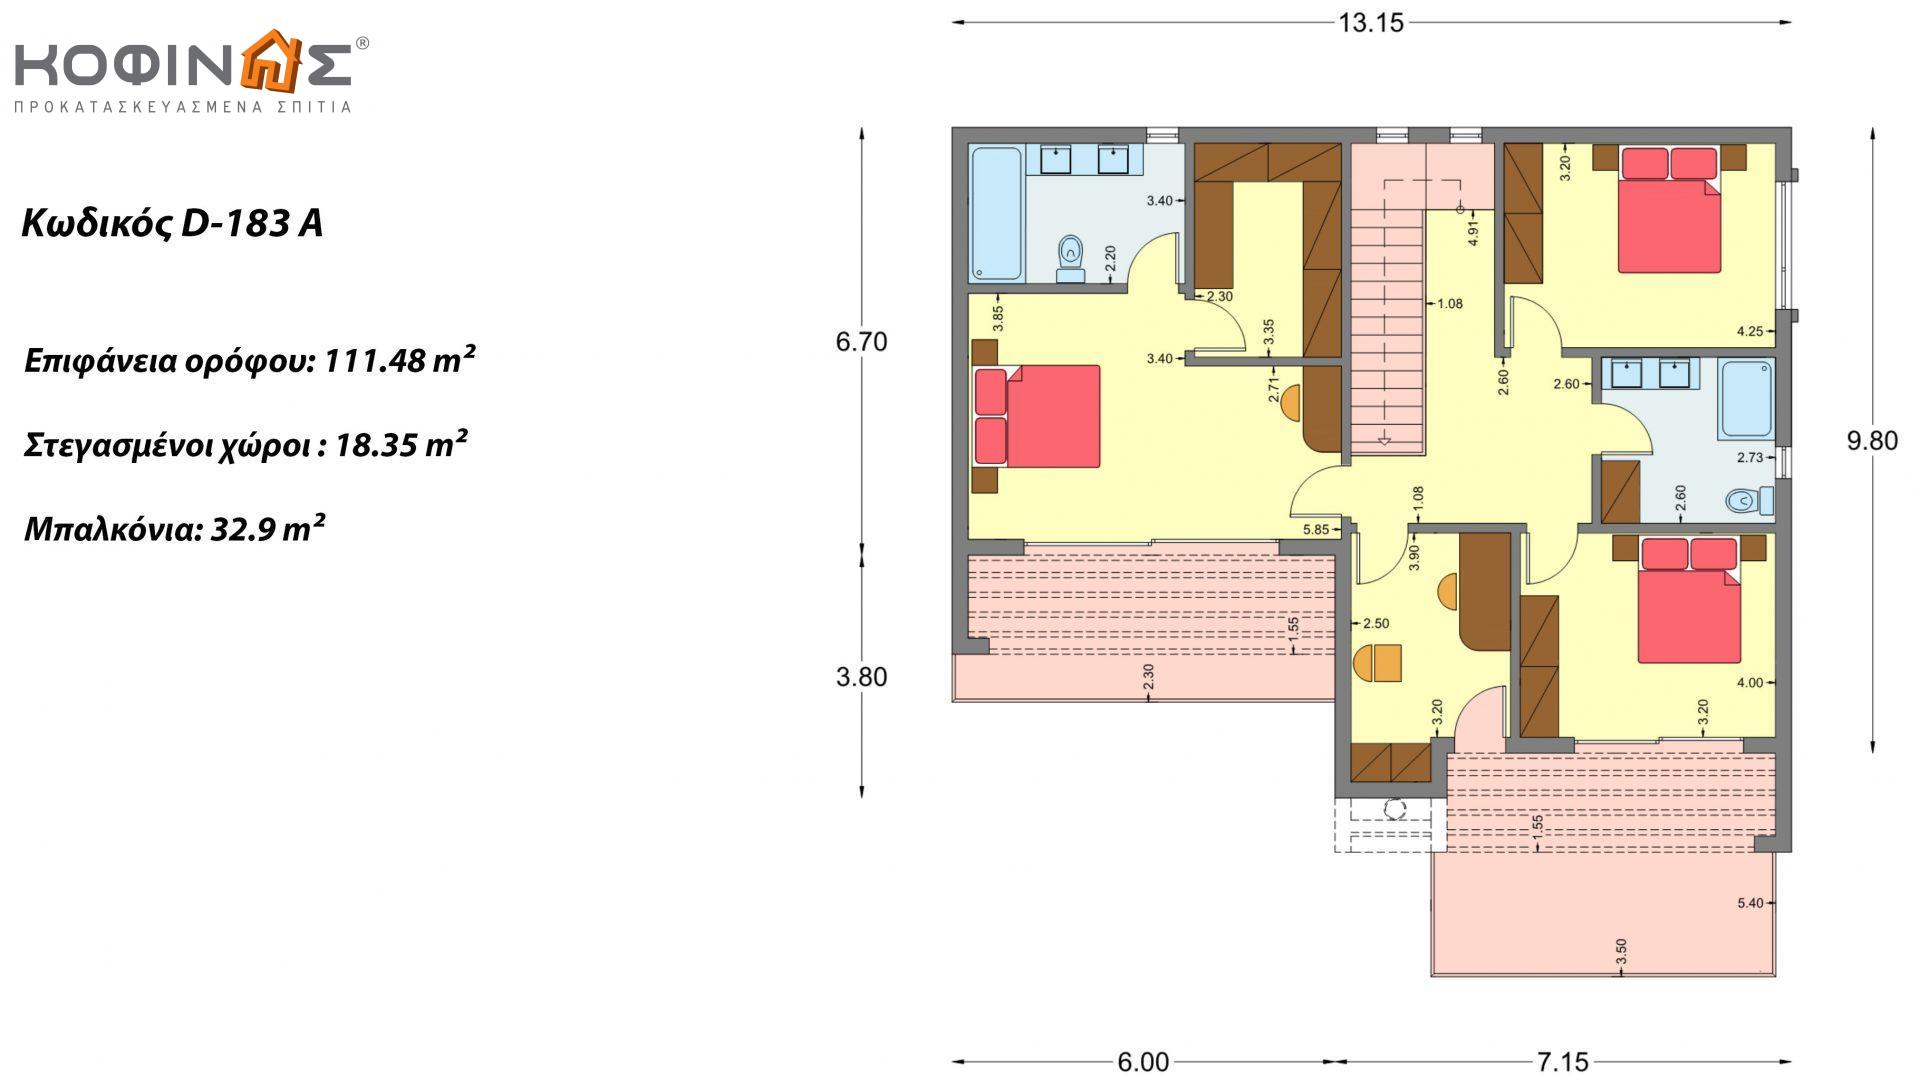 Διώροφη κατοικία D 183Α, συνολικής επιφάνειας 183,77 τ.μ.,+Γκαράζ 41,98 m²(=225,75 m²), στεγασμένοι χώροι 64,39 τ.μ., και μπαλκόνια 32.9 τ.μ.